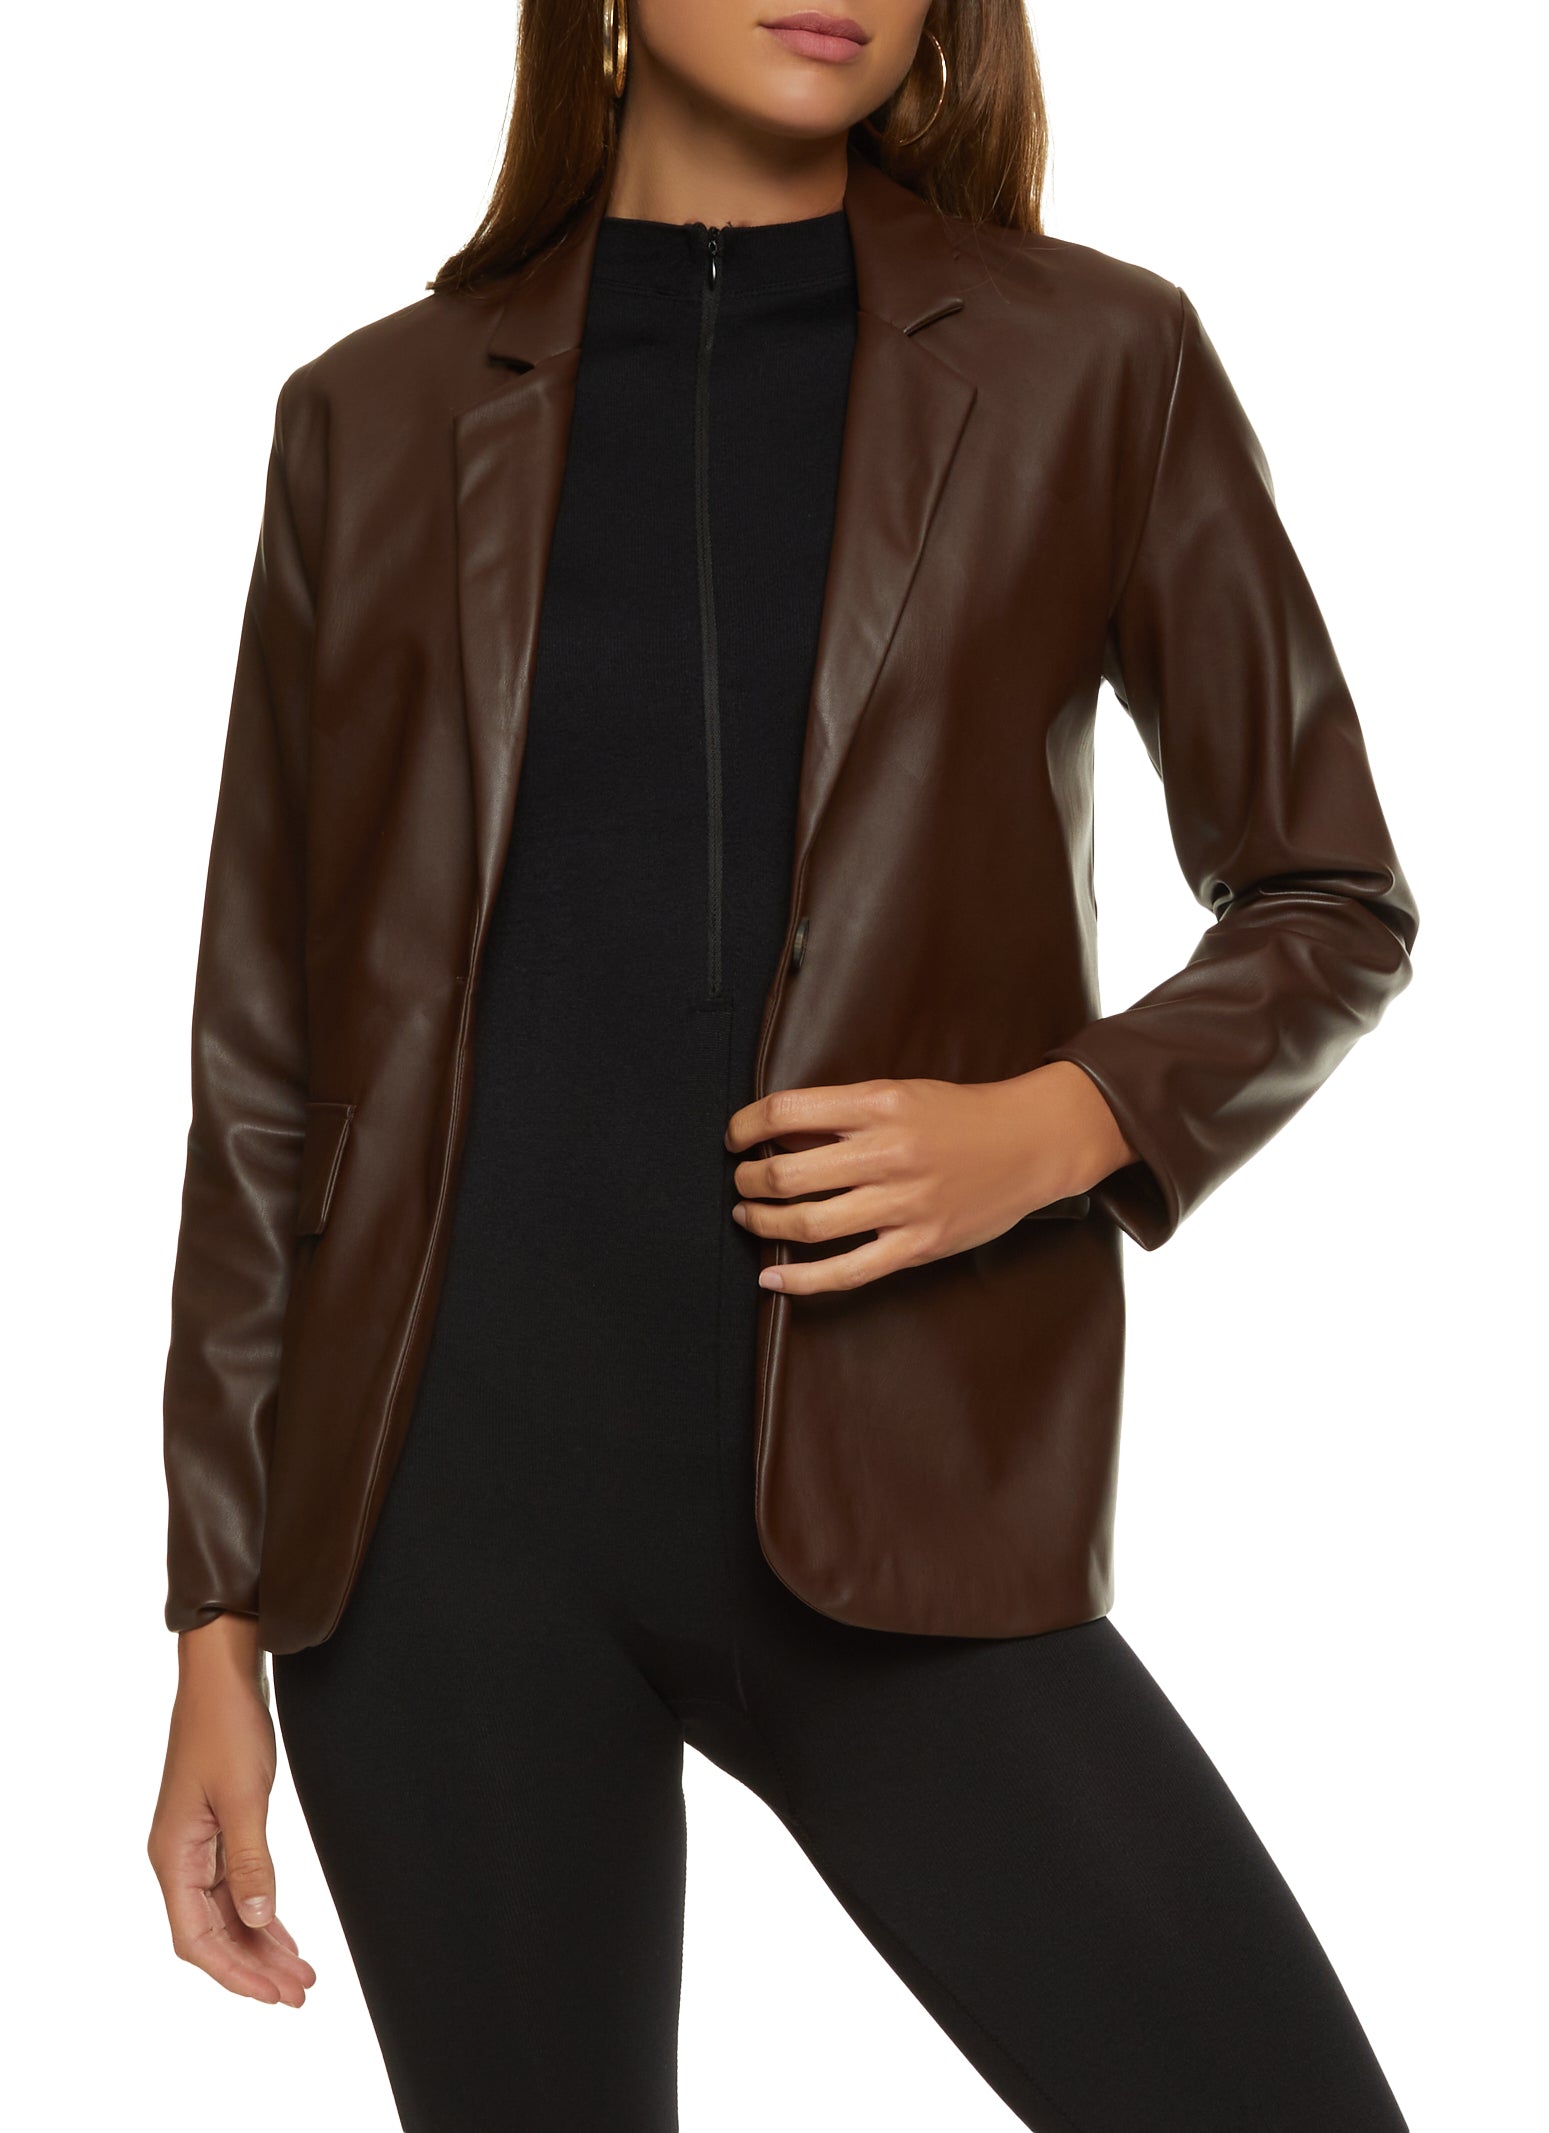 Women's Black Blazer, Beige Satin Pumps, Dark Brown Print Leather